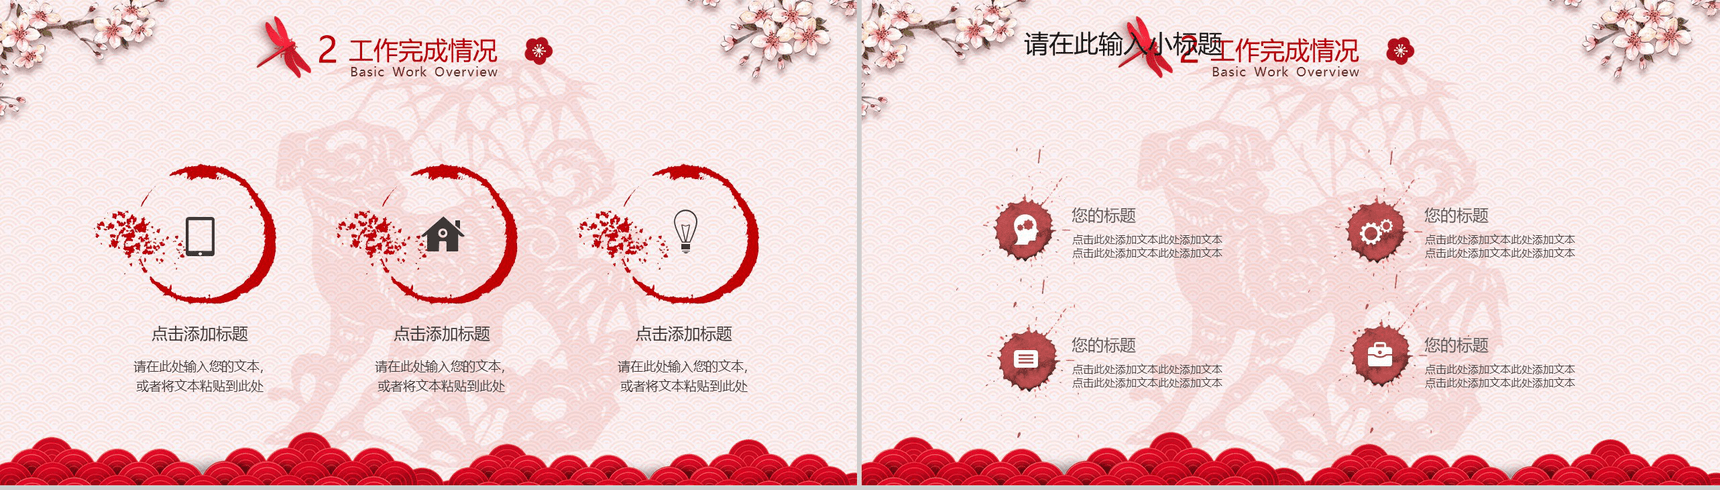 清新粉色中国风工作总结汇报年会活动策划PPT模板-8